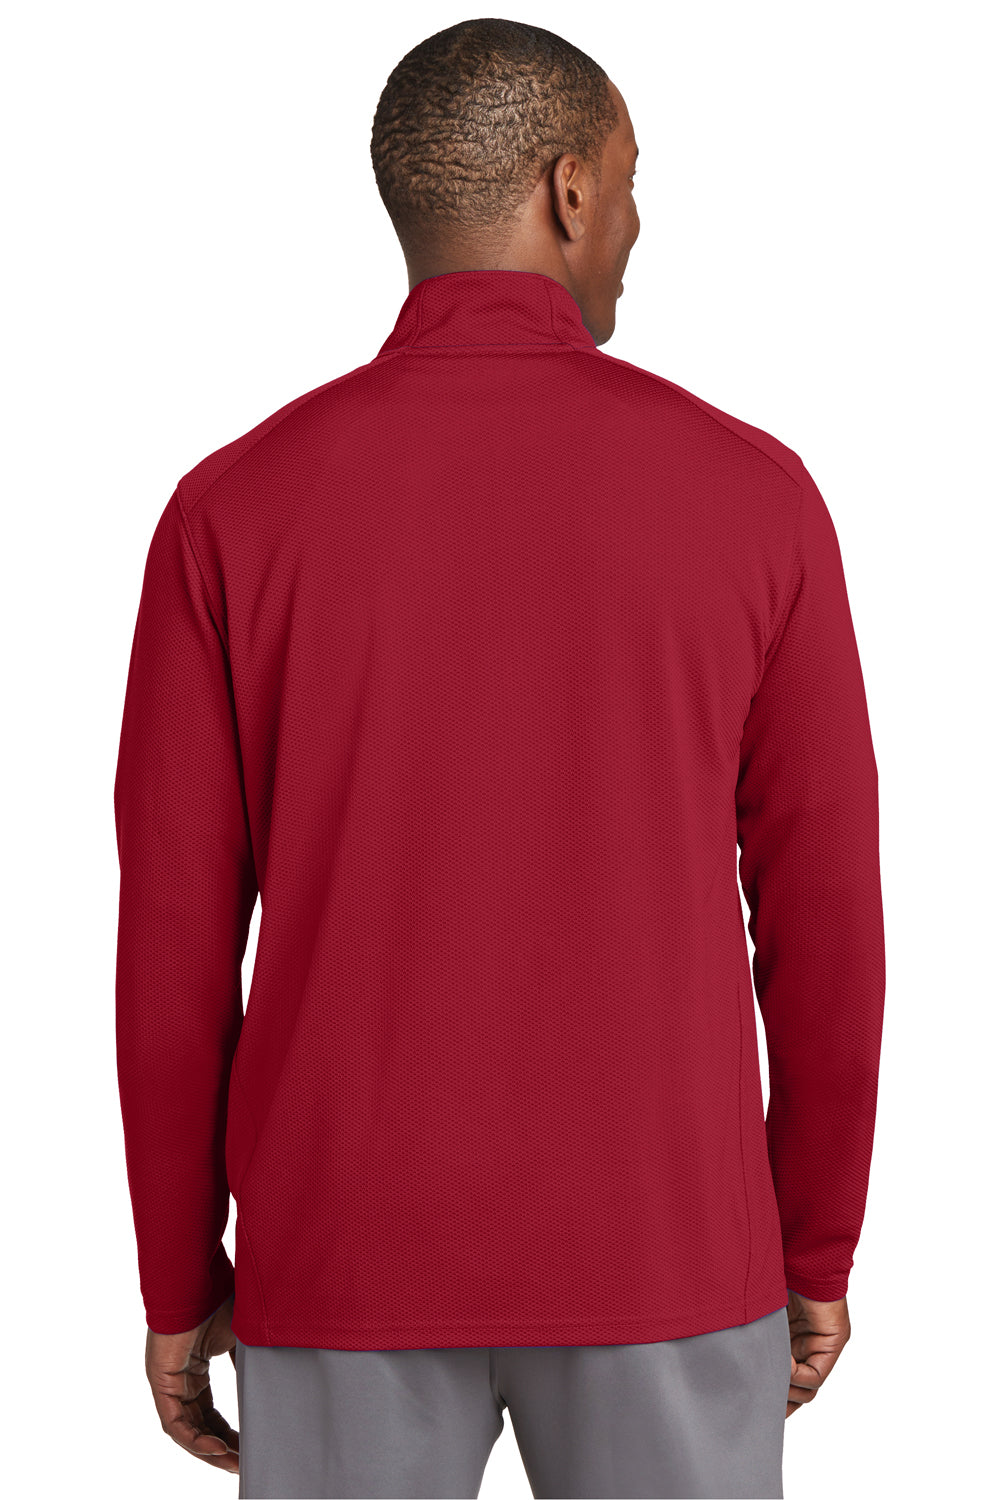 Sport-Tek ST860 Mens Sport-Wick Moisture Wicking 1/4 Zip Sweatshirt Red Back